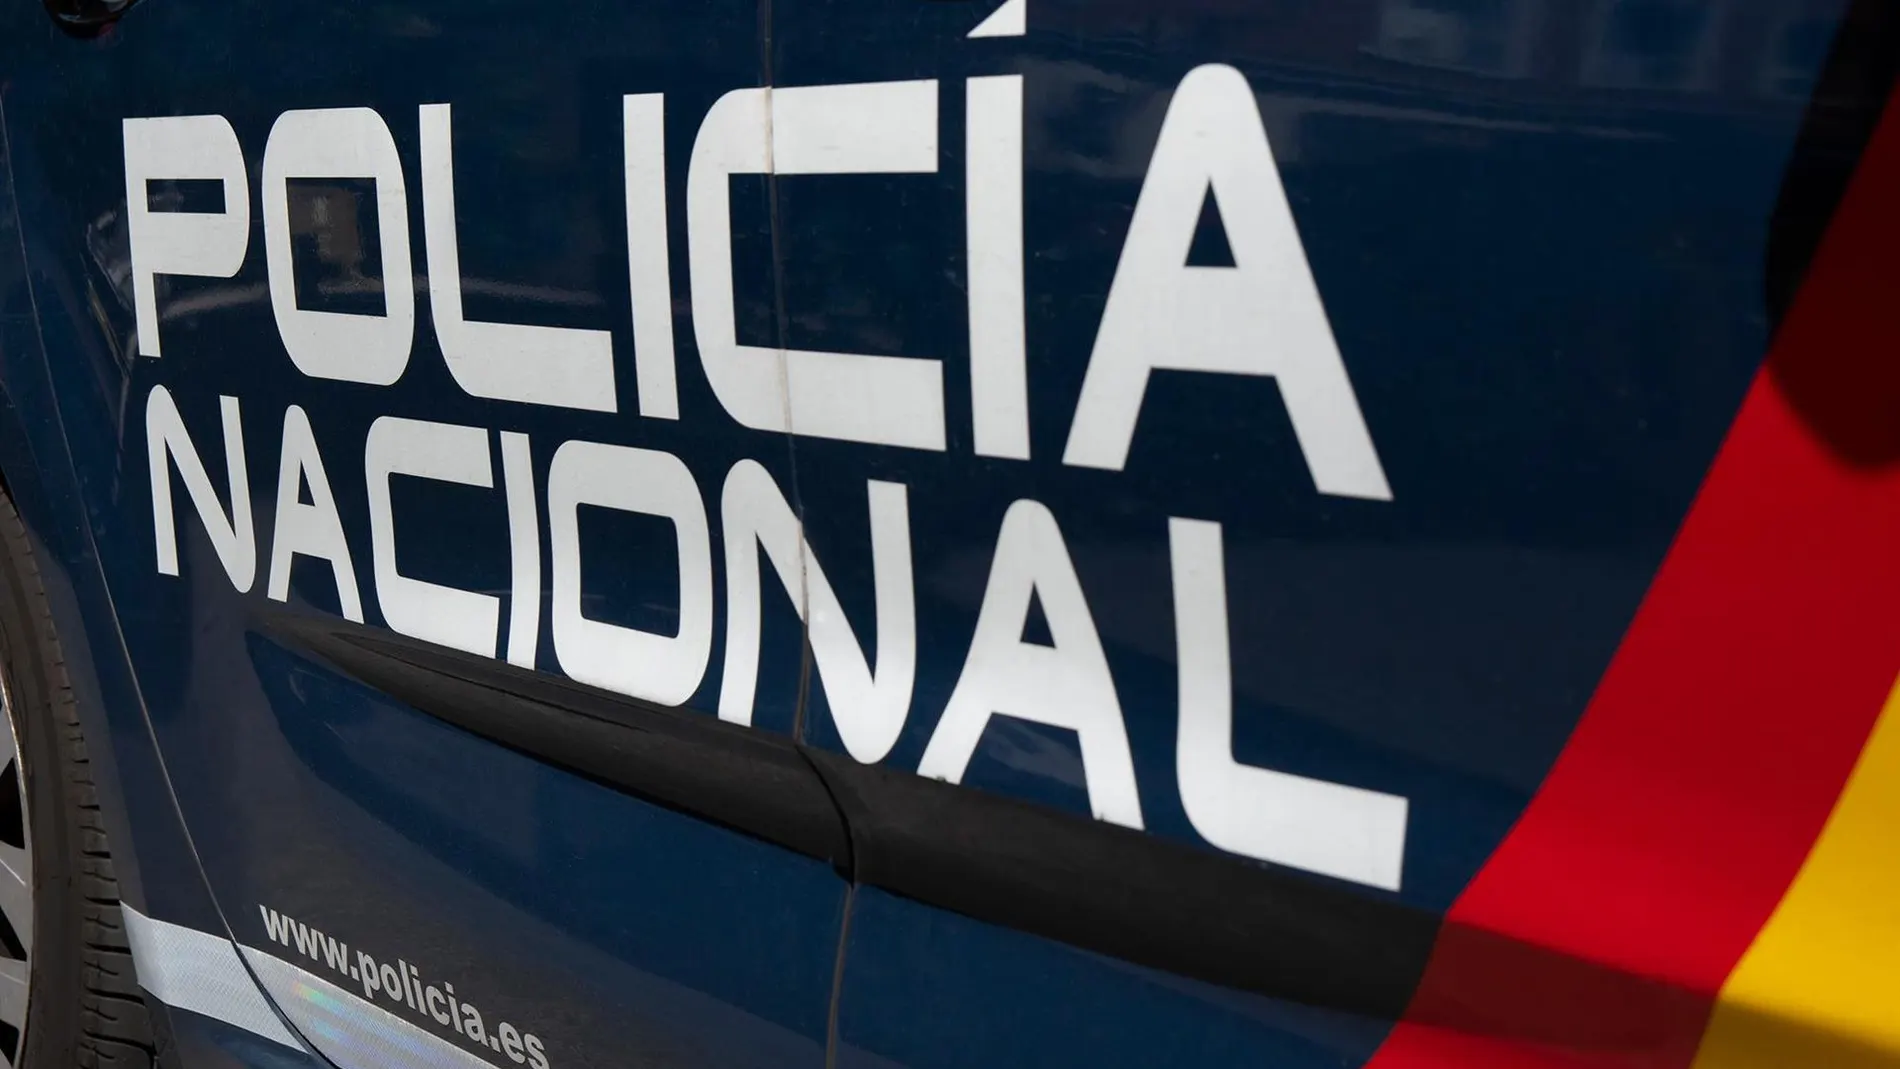 MURCIA.-Sucesos.- La Policía Nacional detiene al autor reincidente de la quema de varios contenedores en la ciudad de Murcia